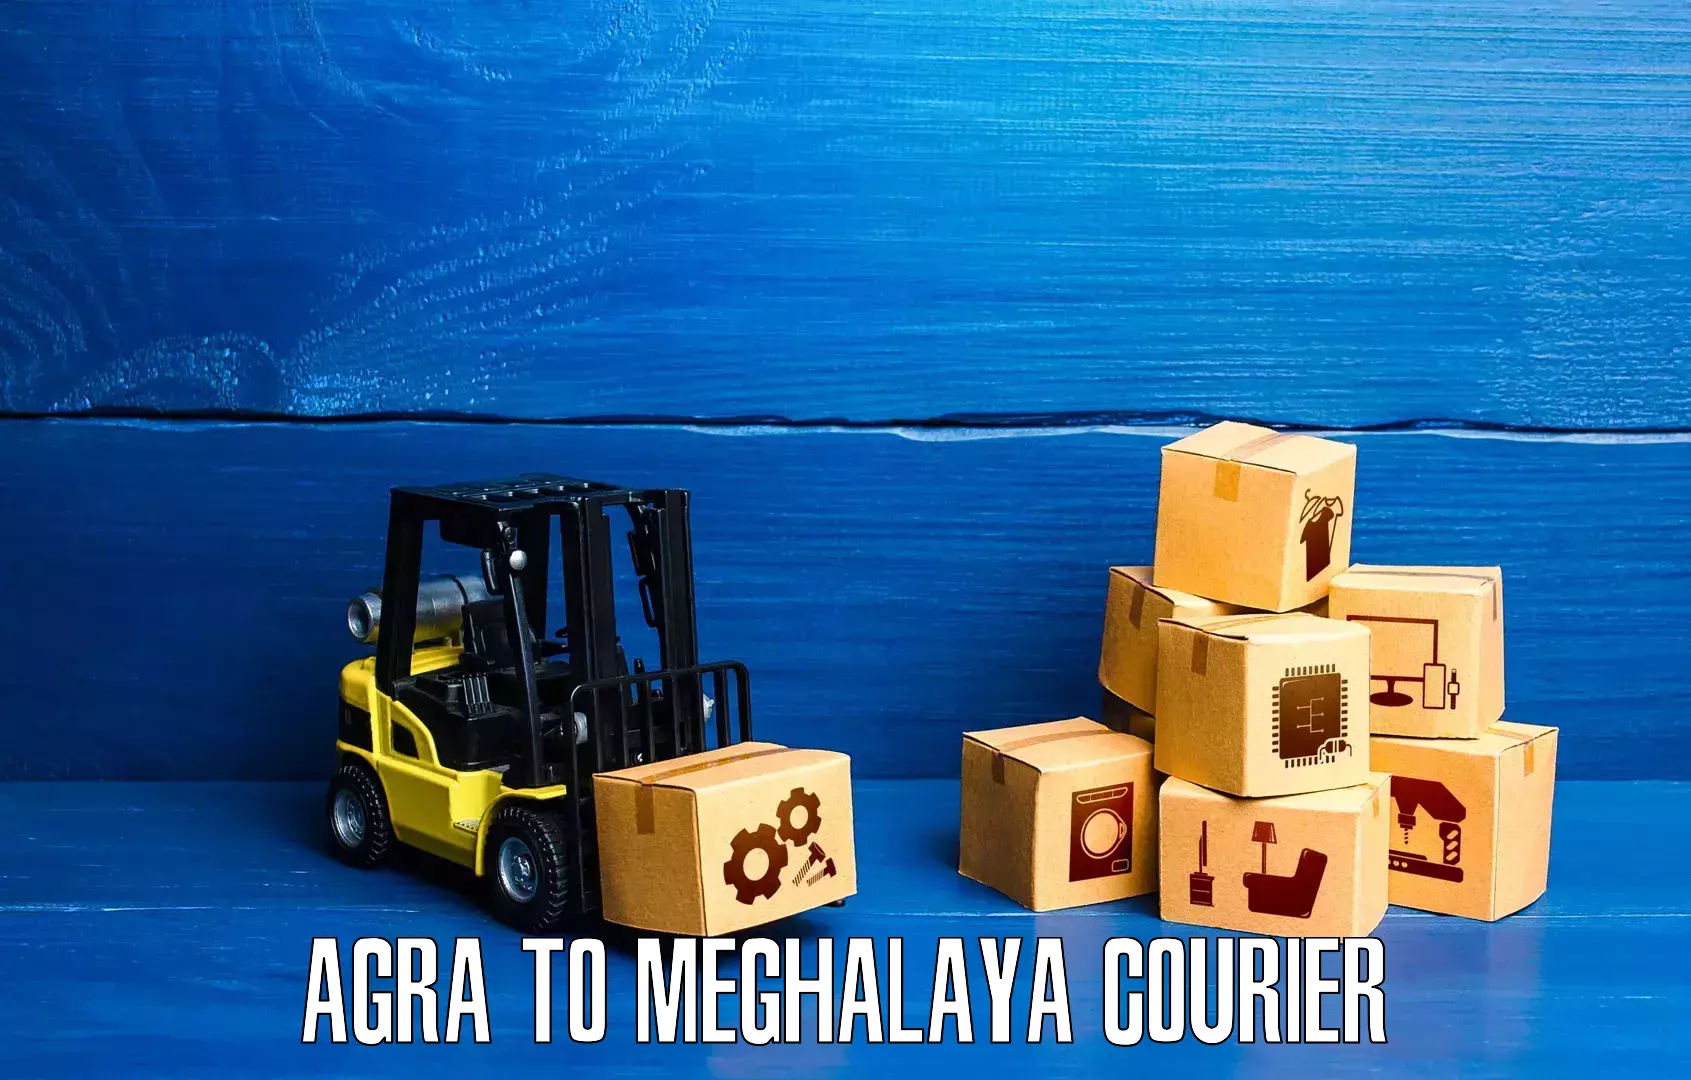 Urban courier service Agra to Shillong